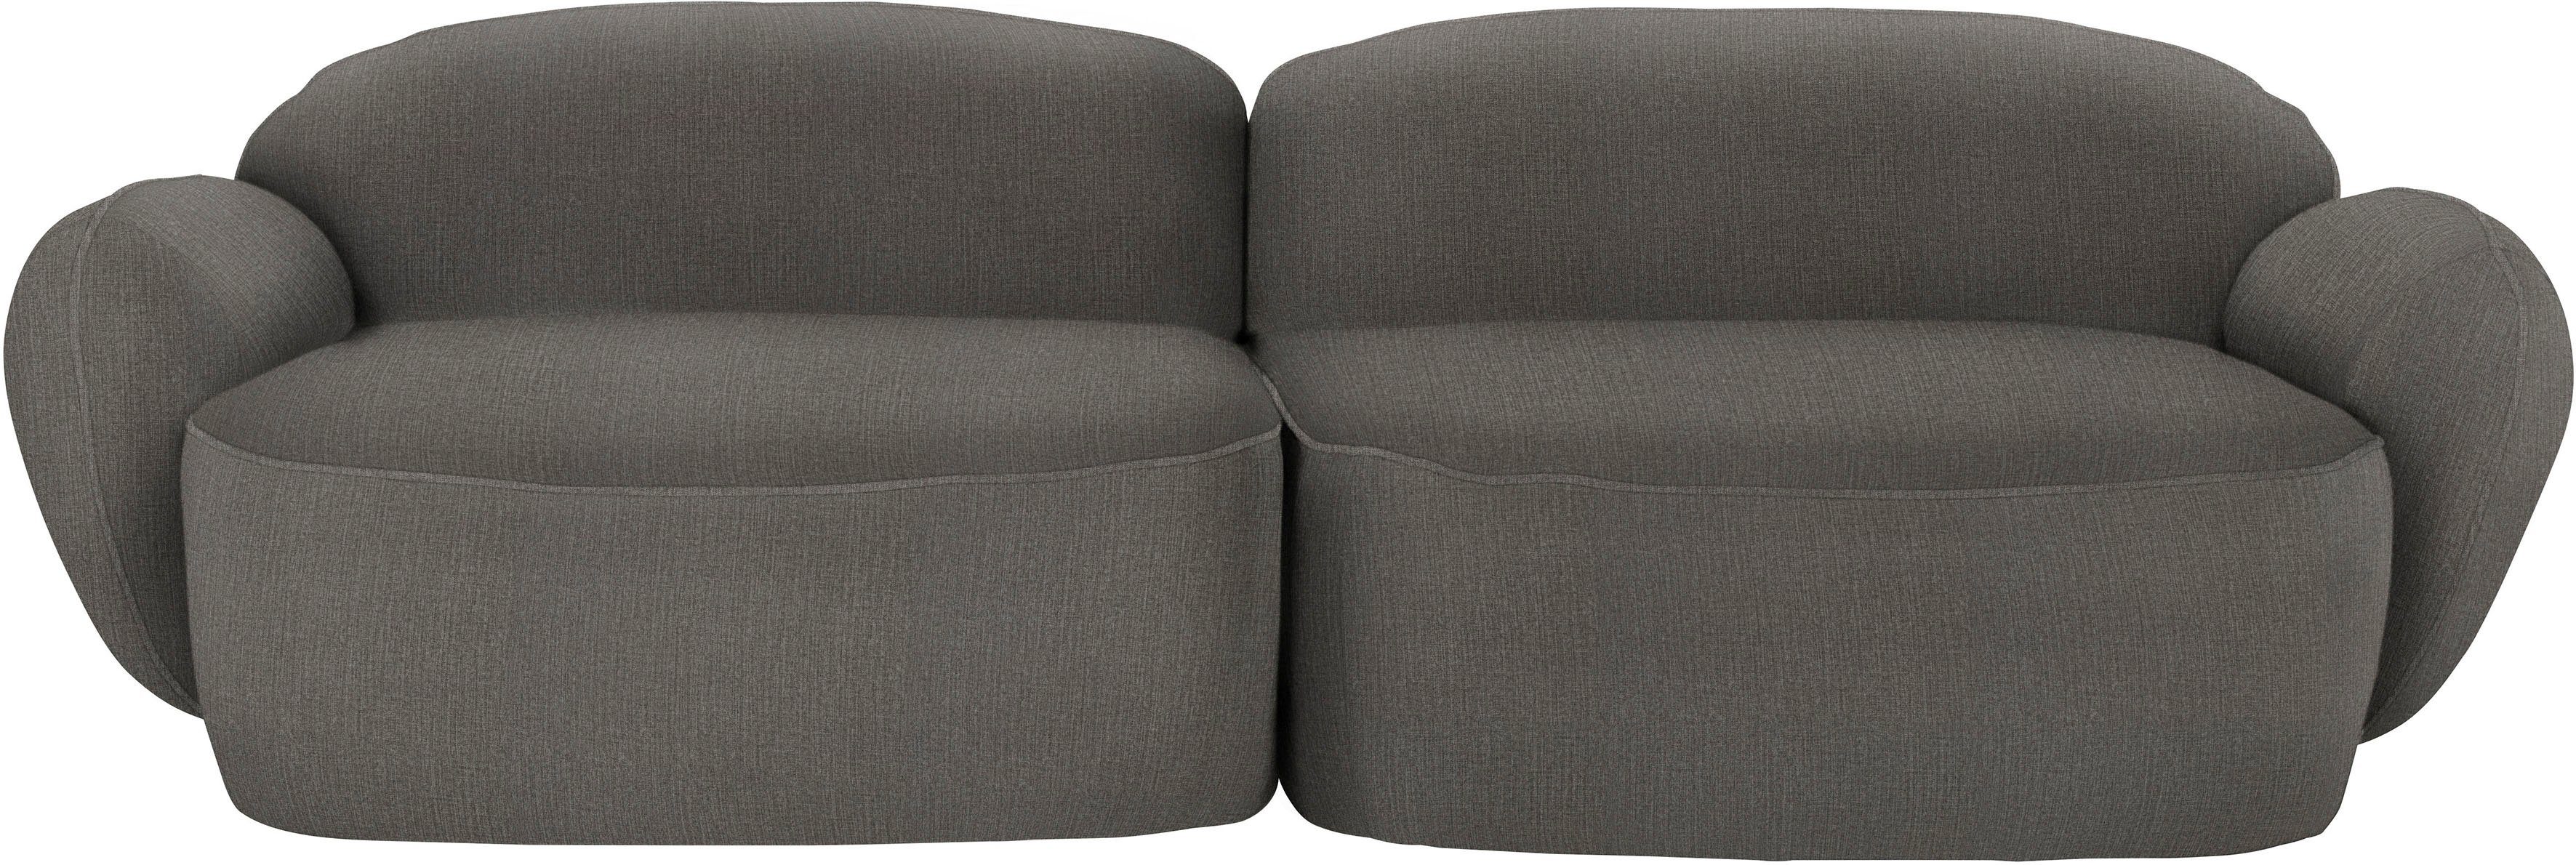 furninova 2,5-Sitzer Bubble, komfortabel durch Memoryschaum, im skandinavischen Design